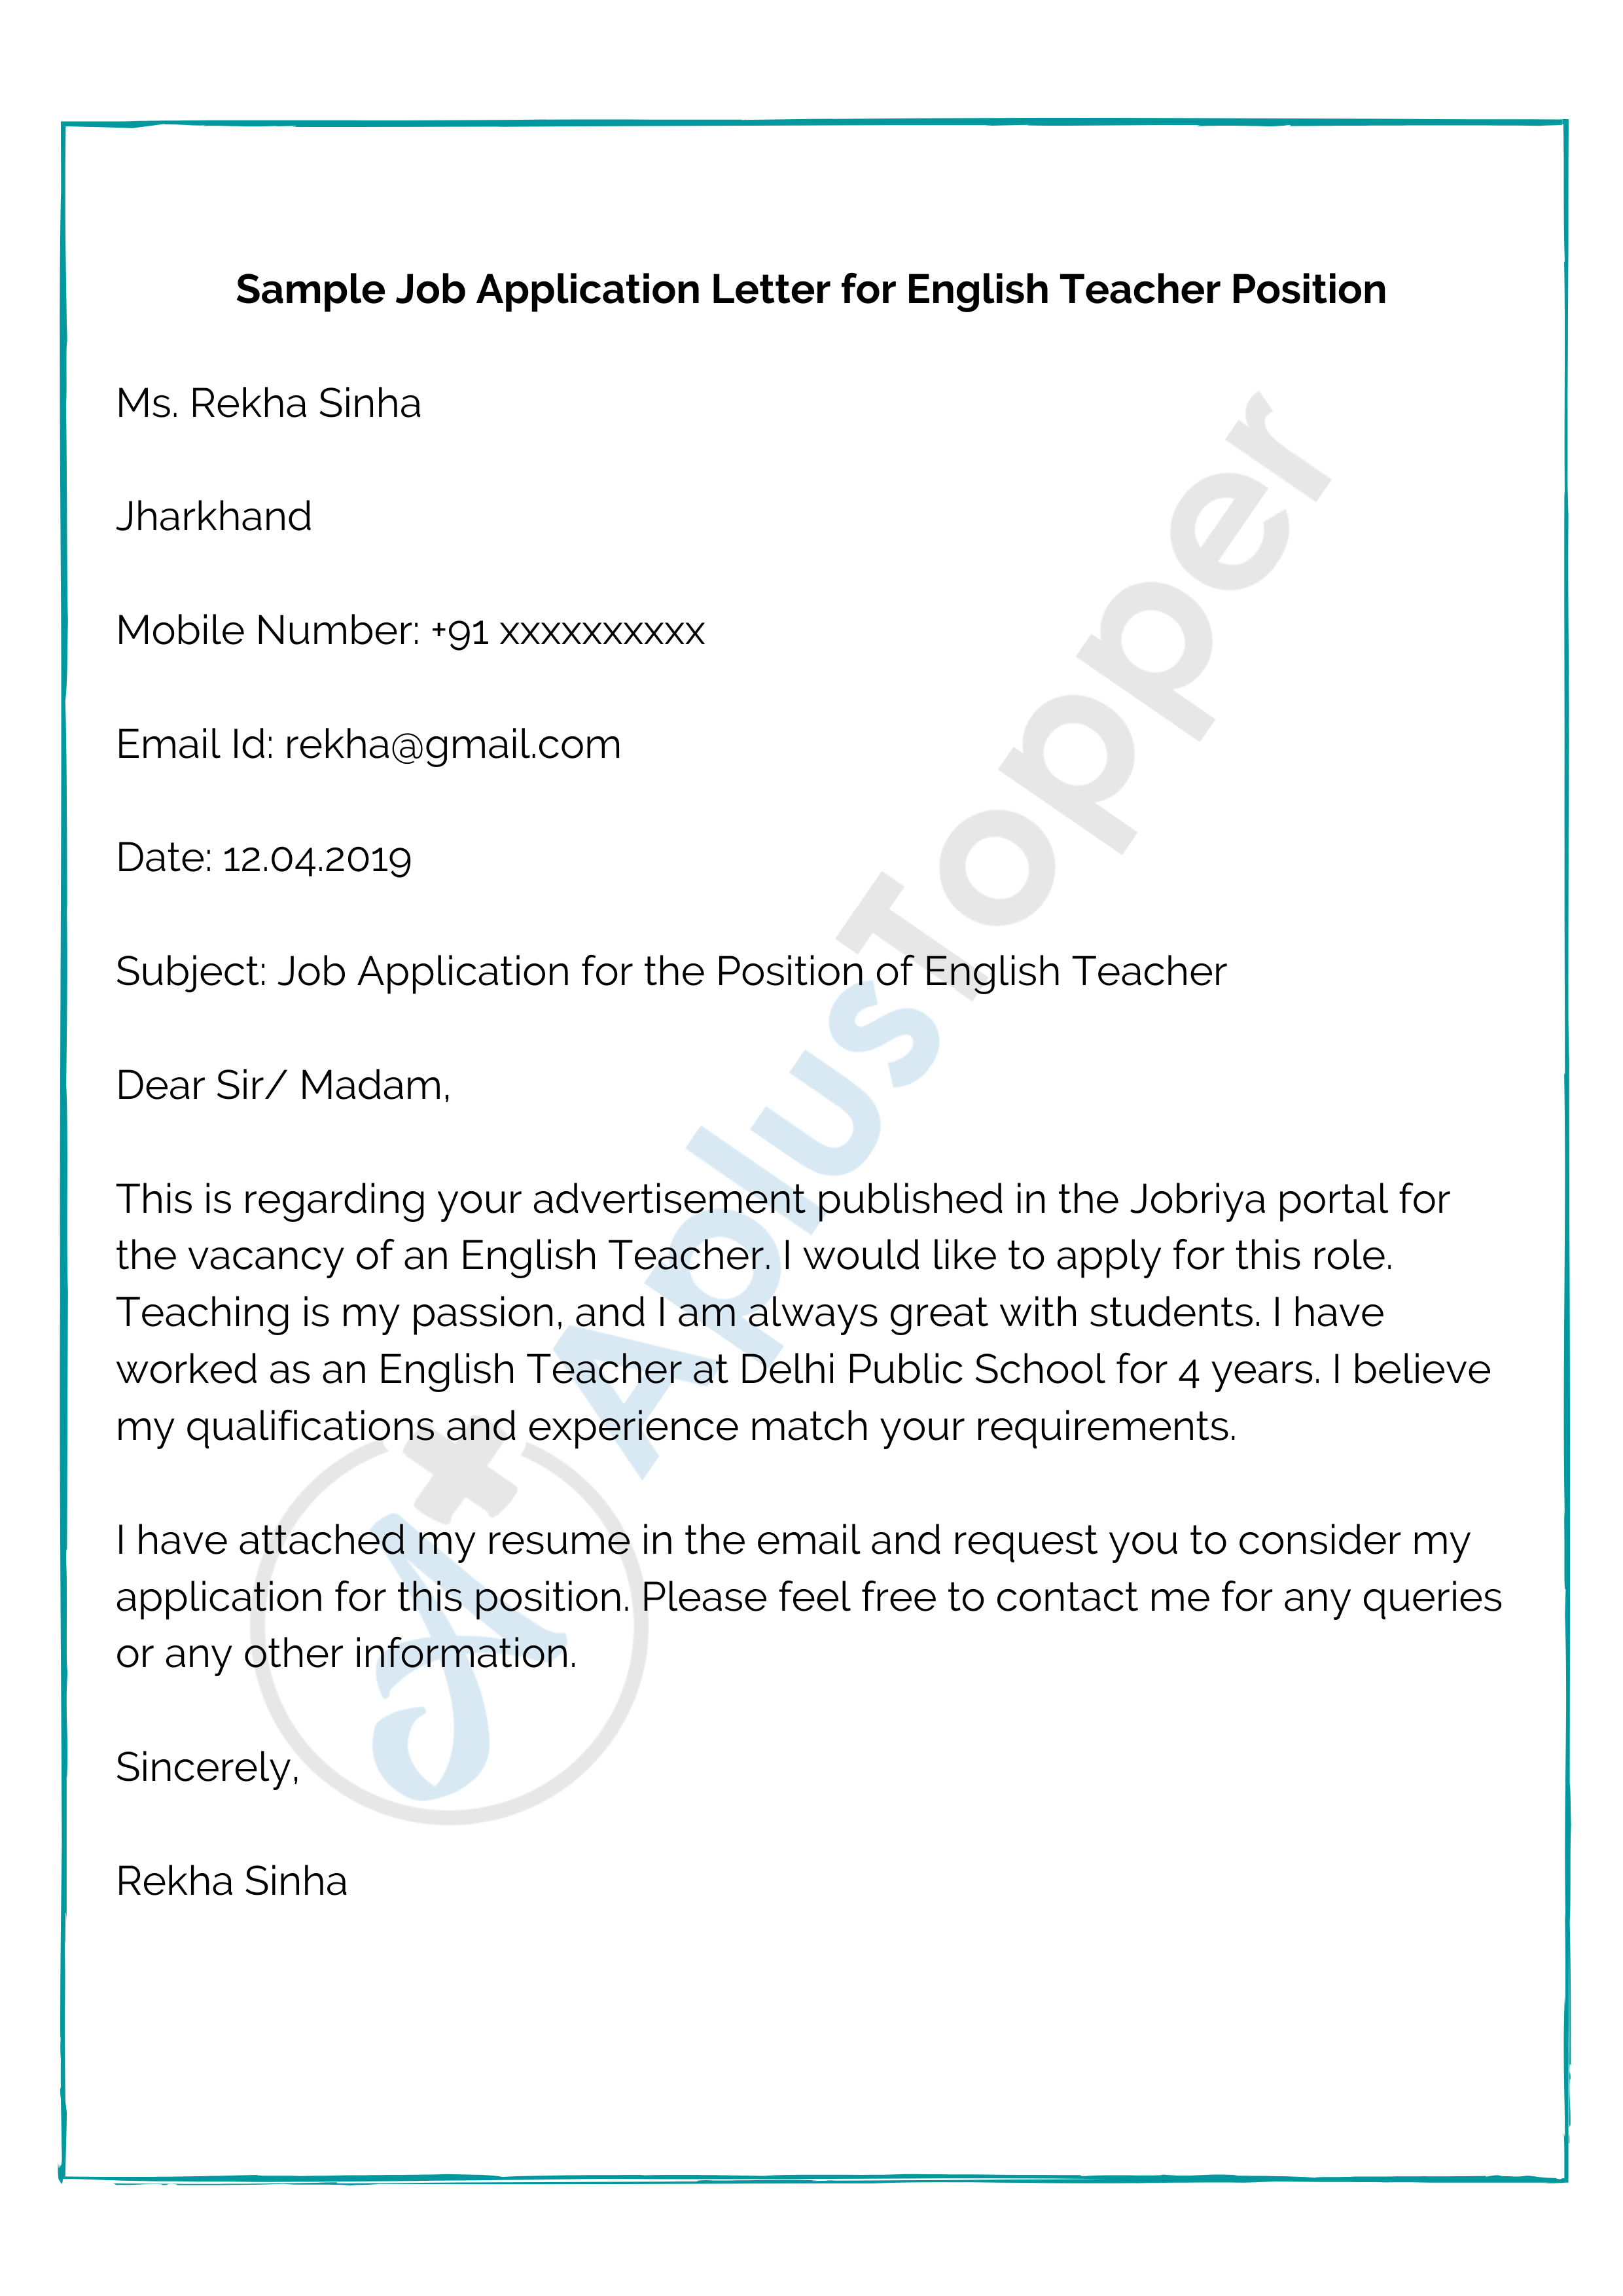 Sample Job Application Letter for English Teacher Position